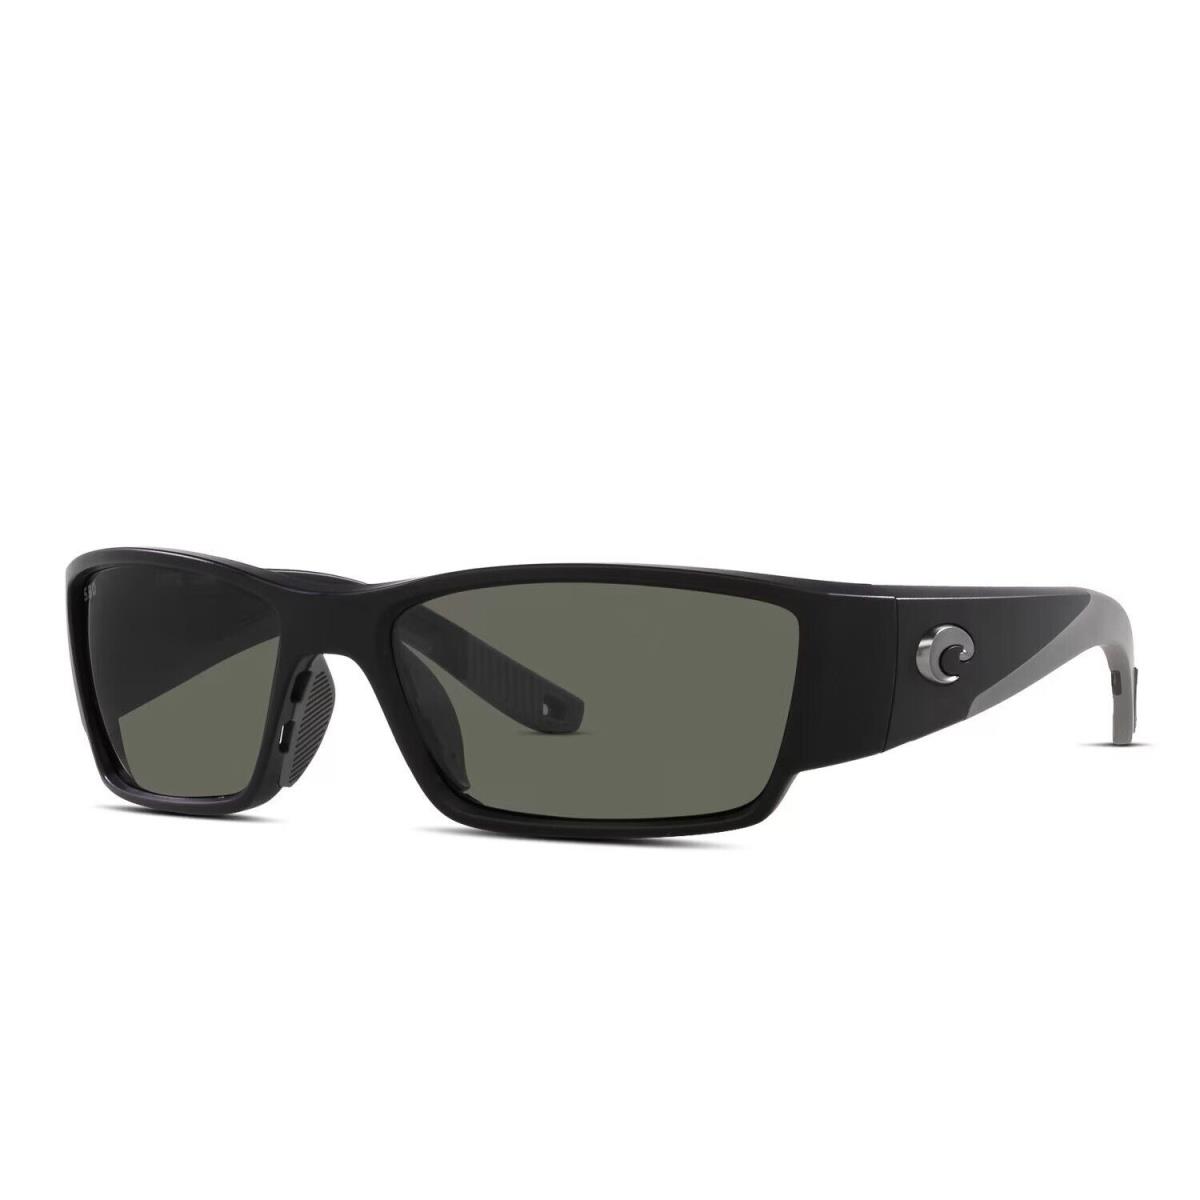 Costa Del Mar Corbina Pro Sunglasses Matte Black w/ Gray Polarized Glass Lens